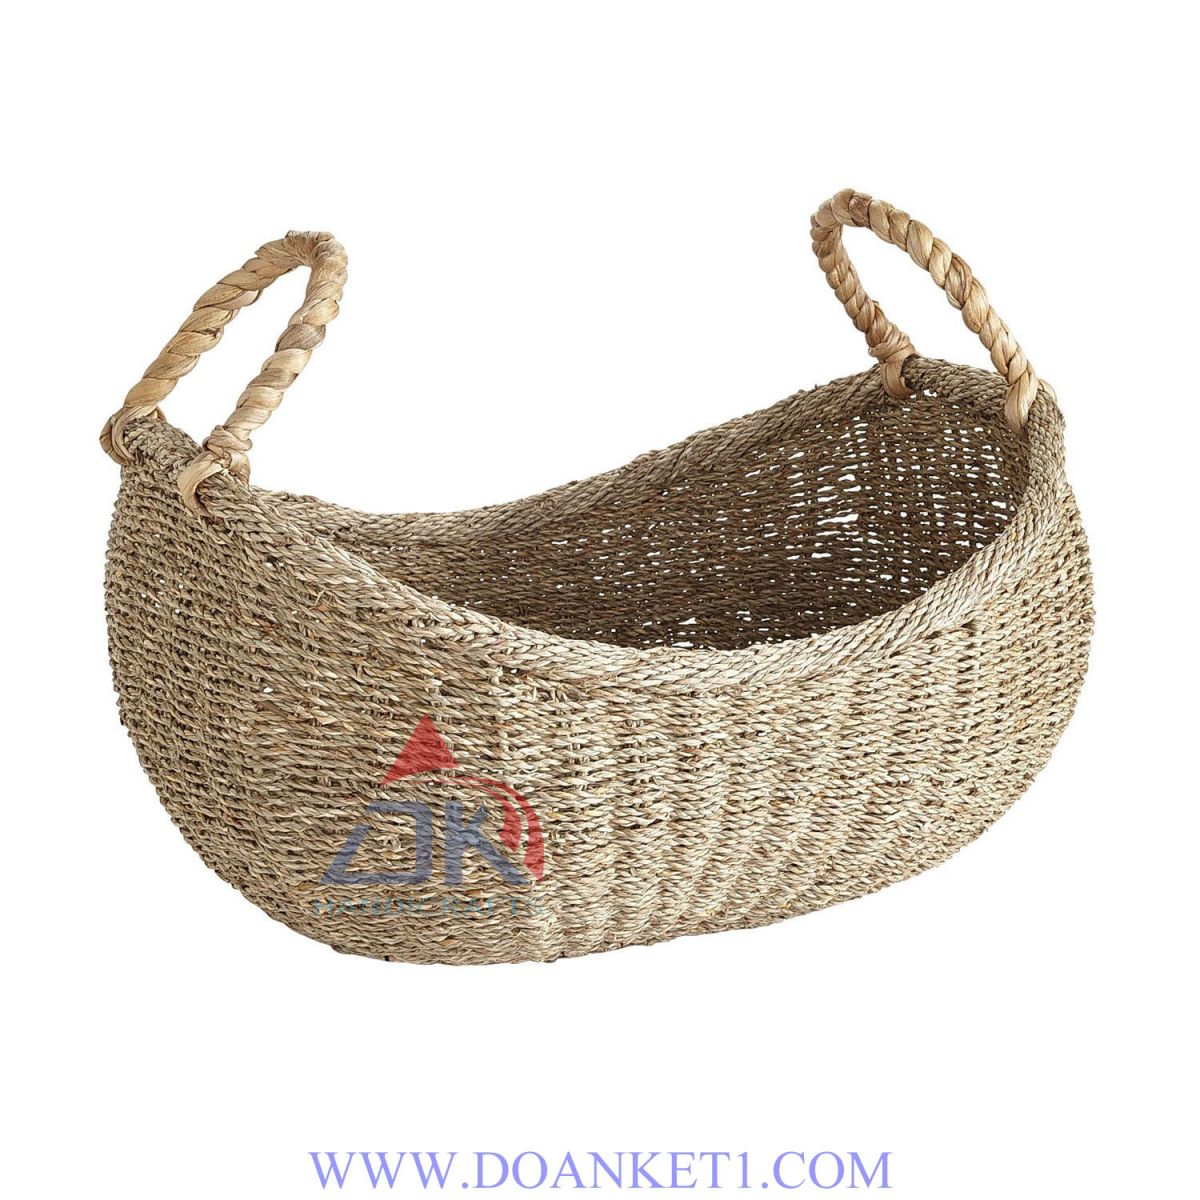 Seagrass Basket # DK231